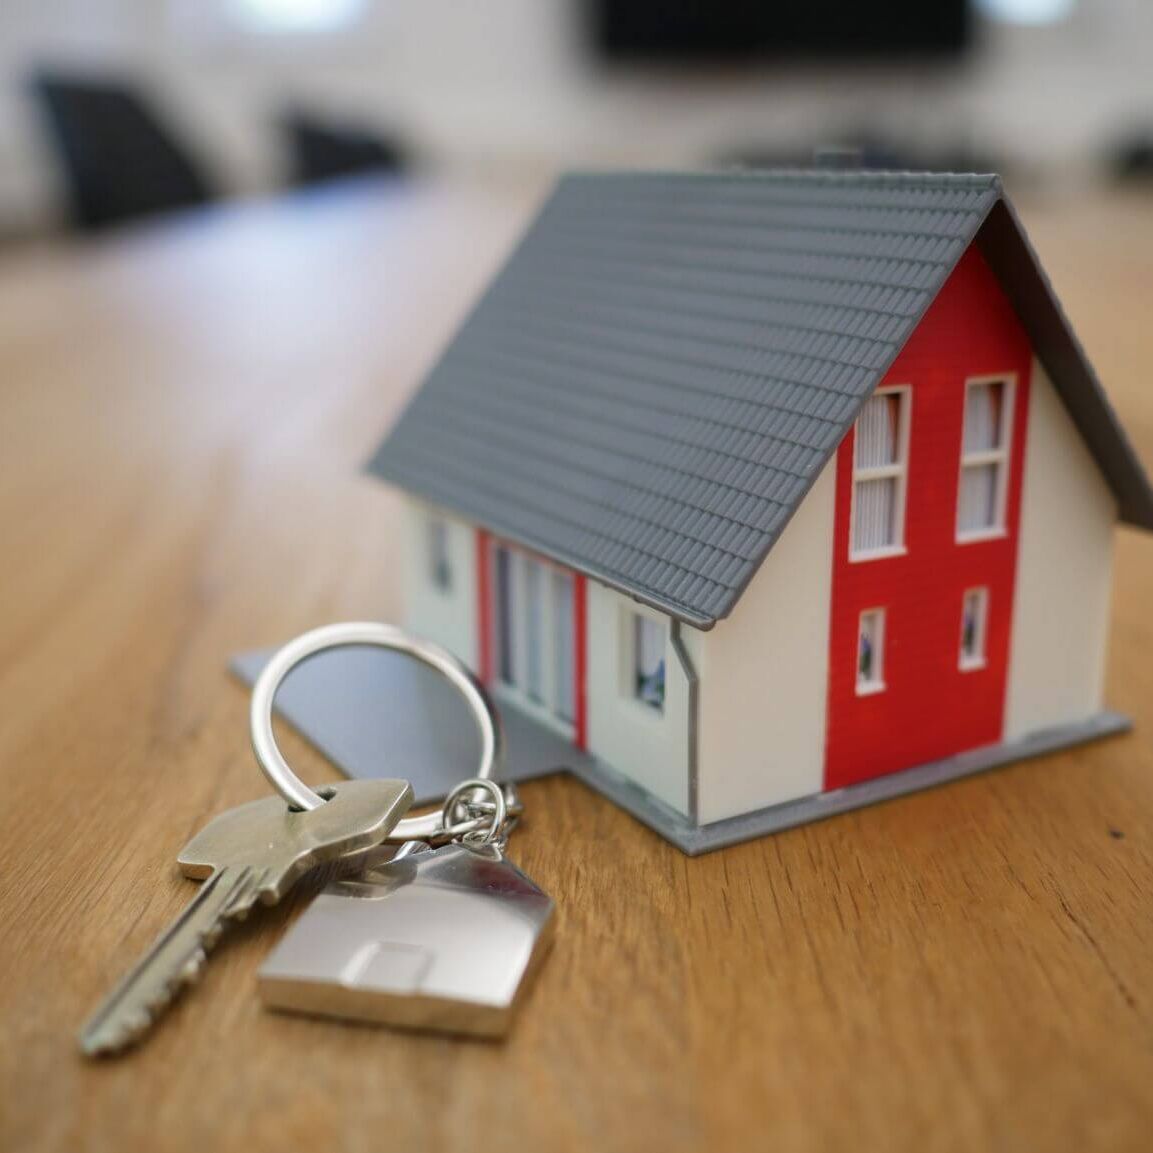 keychain and tiny house key fob